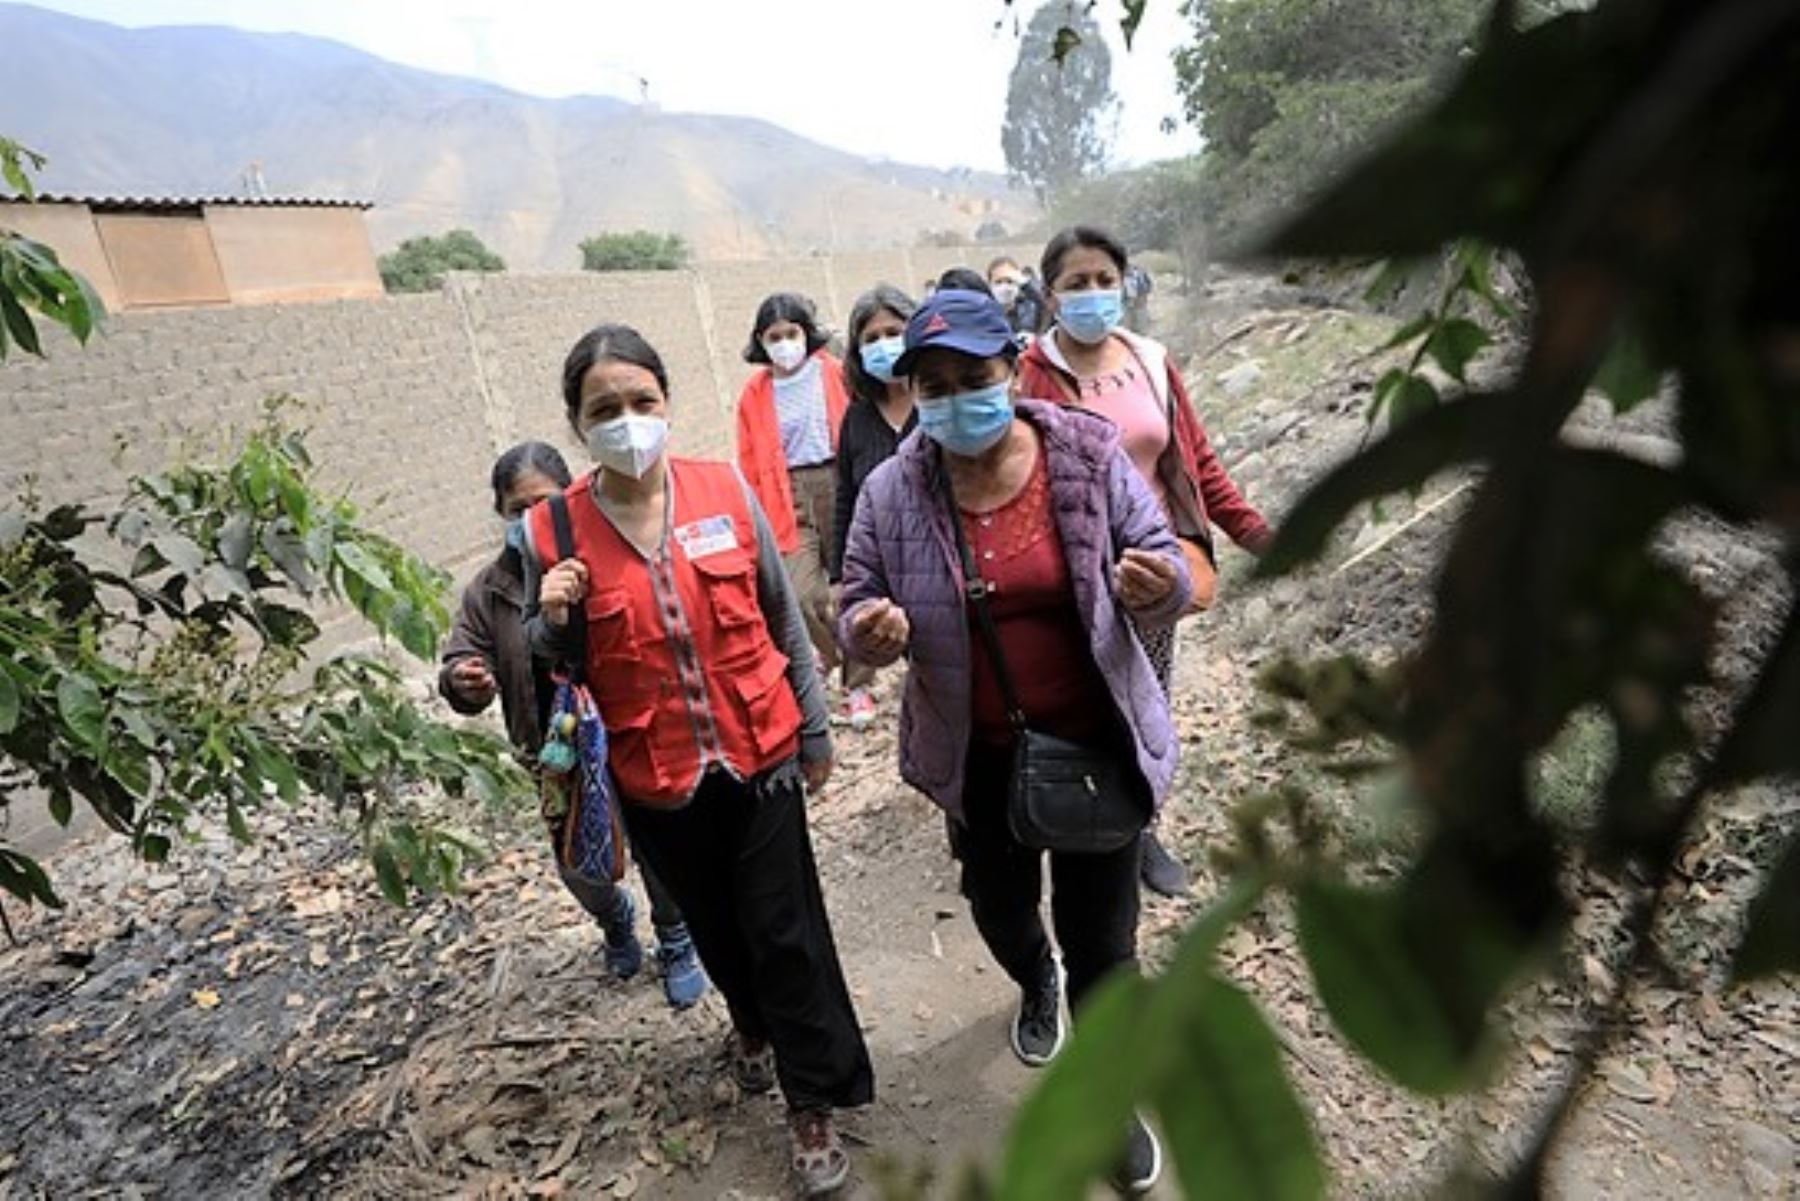 La ministra de la Mujer y Poblaciones Vulnerables, Anahí Durand, se reunió con un grupo de agricultoras ecológicas del valle de Lurín. Foto: ANDINA/Difusión